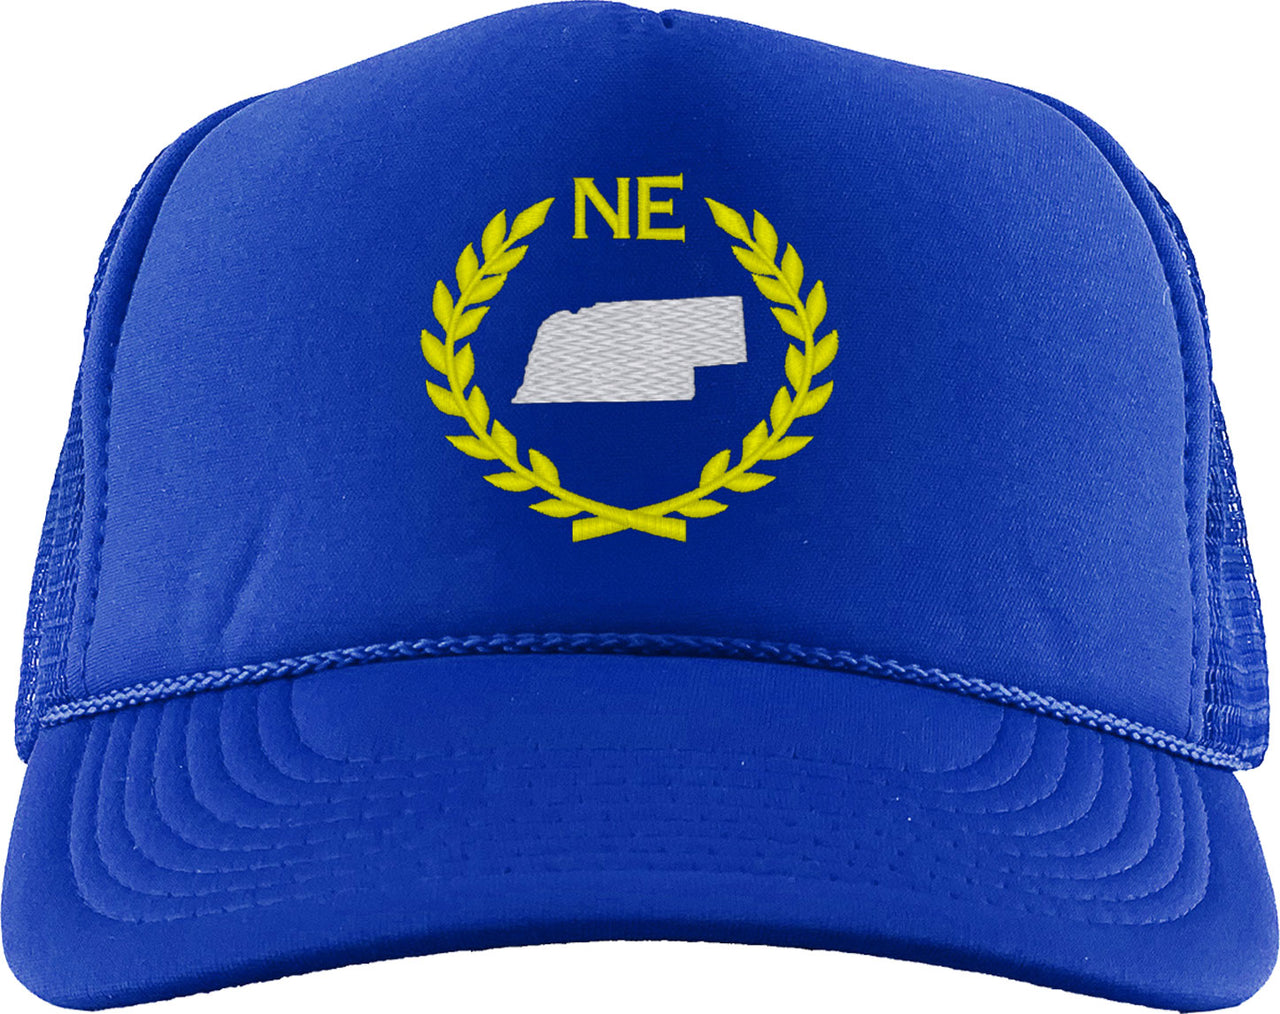 Nebraska State Foam Trucker Hat